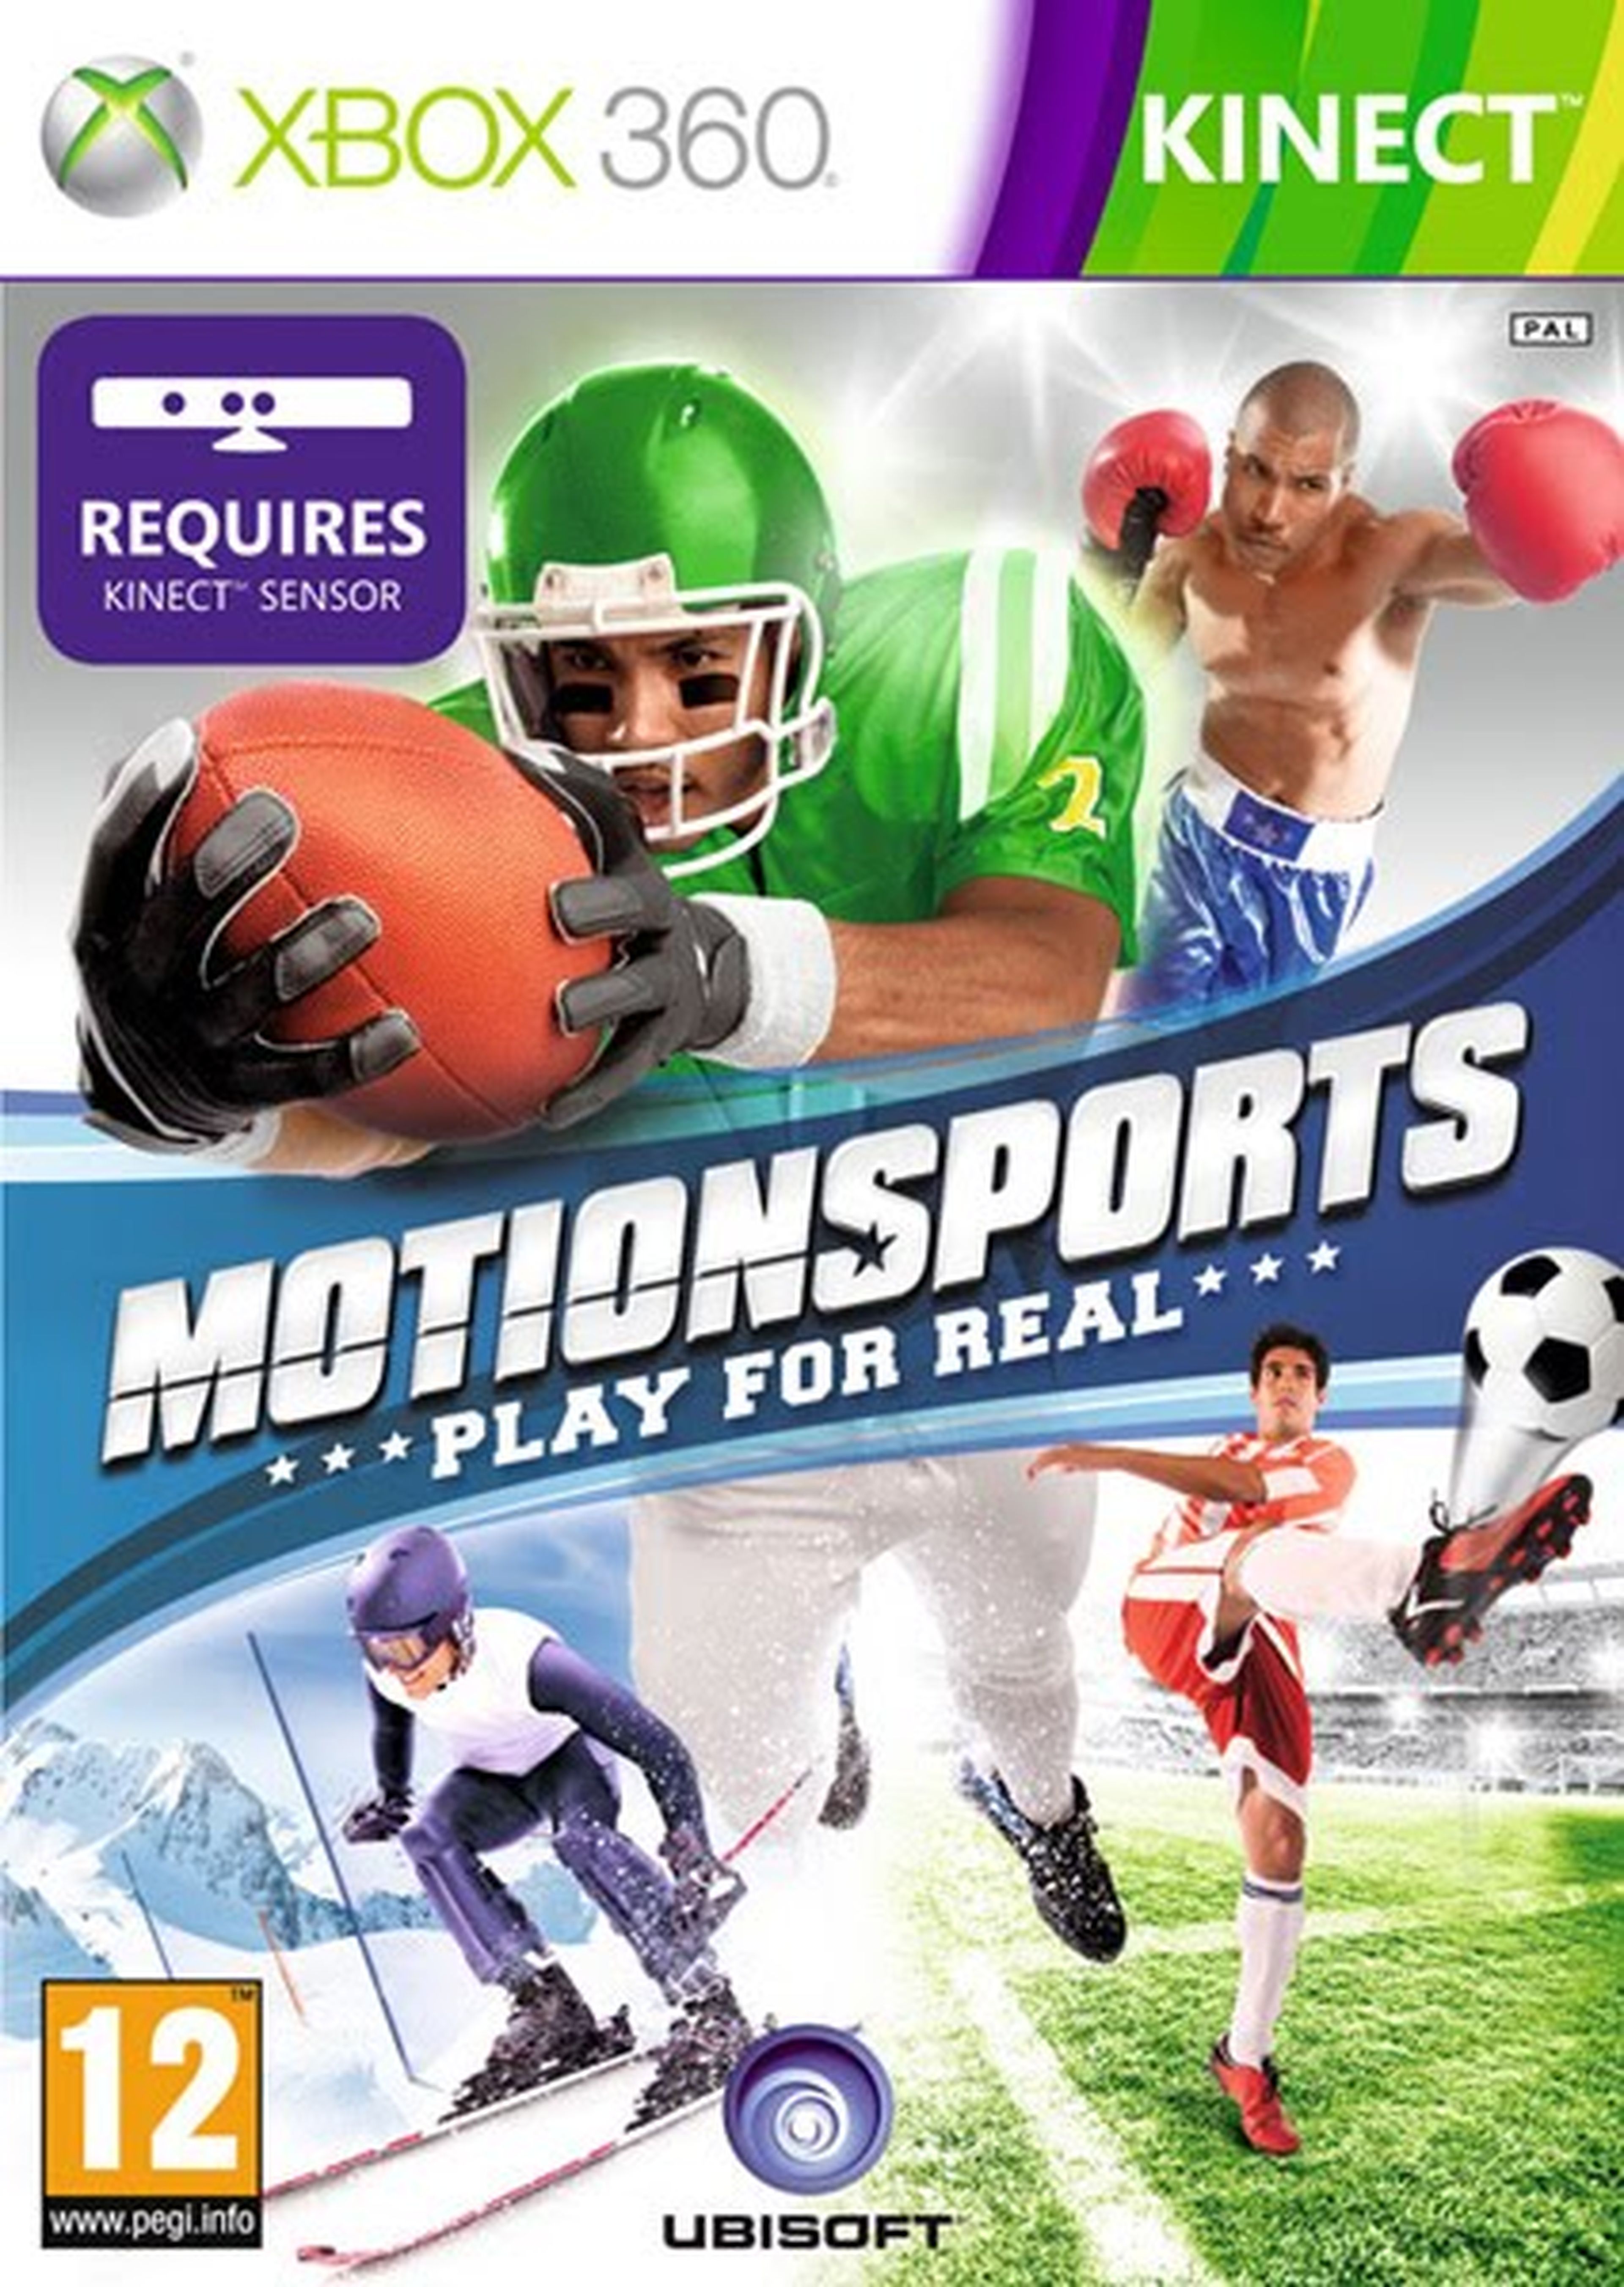 Kinect sport xbox 360. Kinect Sports Xbox 360. Kinect Sports Xbox 360 коробка. Kinect motionsports Xbox 360. Kinect Sports Xbox 360 обложка.